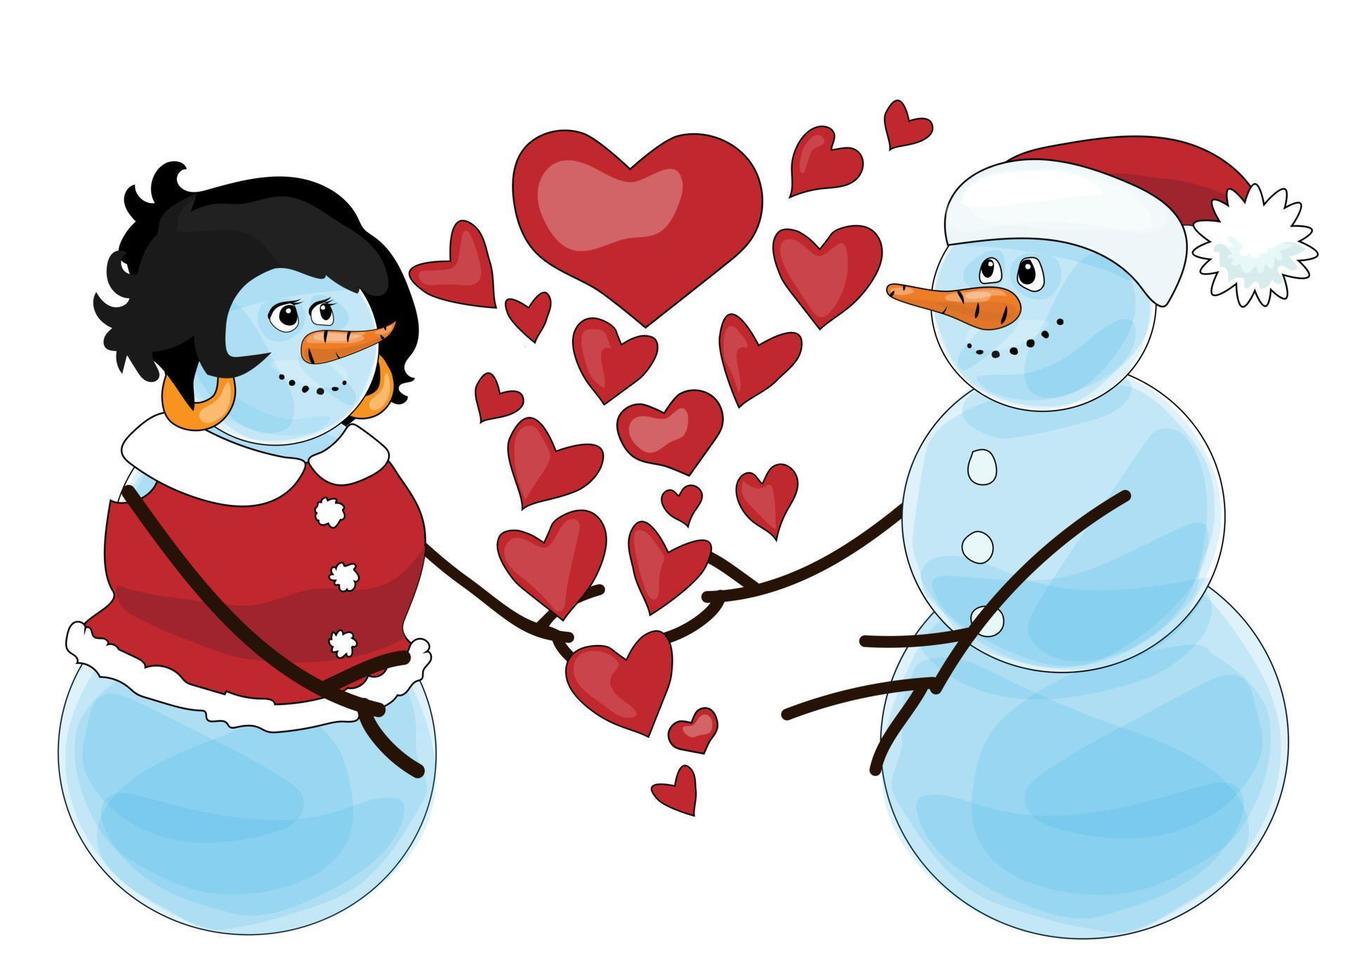 dos muñecos de nieve sonrientes con ropa navideña roja brillante se van a abrazar o besar. muchos corazones expresan que están enamorados. aislado en la ilustración de vector blanco. Personajes de caricatura.